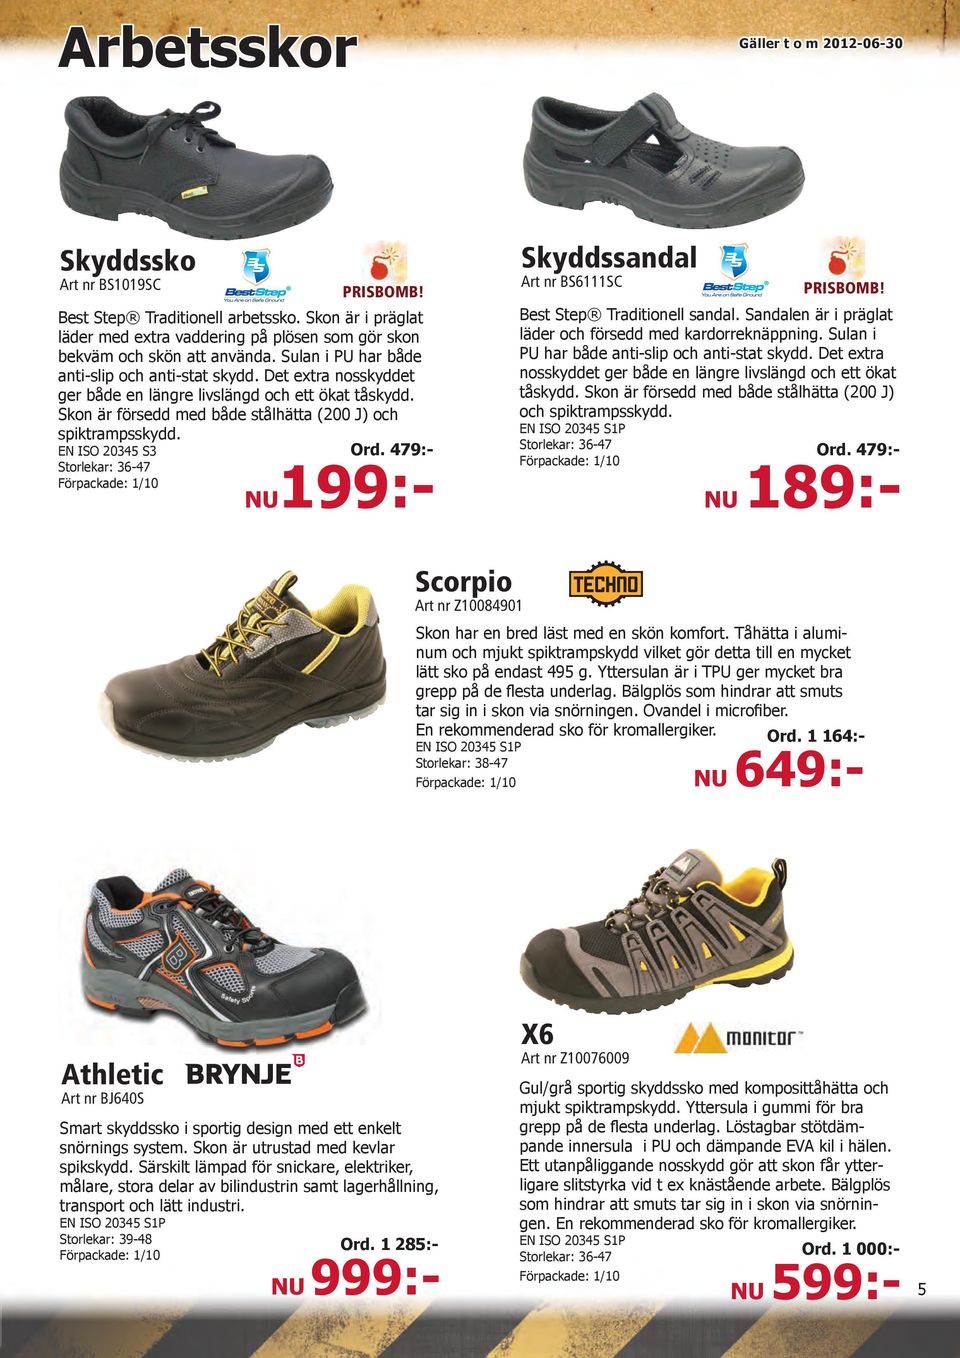 EN ISO 20345 S3 Storlekar: 36-47 Förpackade: 1/10 Skyddssandal Art nr BS6111SC PRISBOMB! Best Step Traditionell sandal. Sandalen är i präglat läder och försedd med kardorreknäppning.